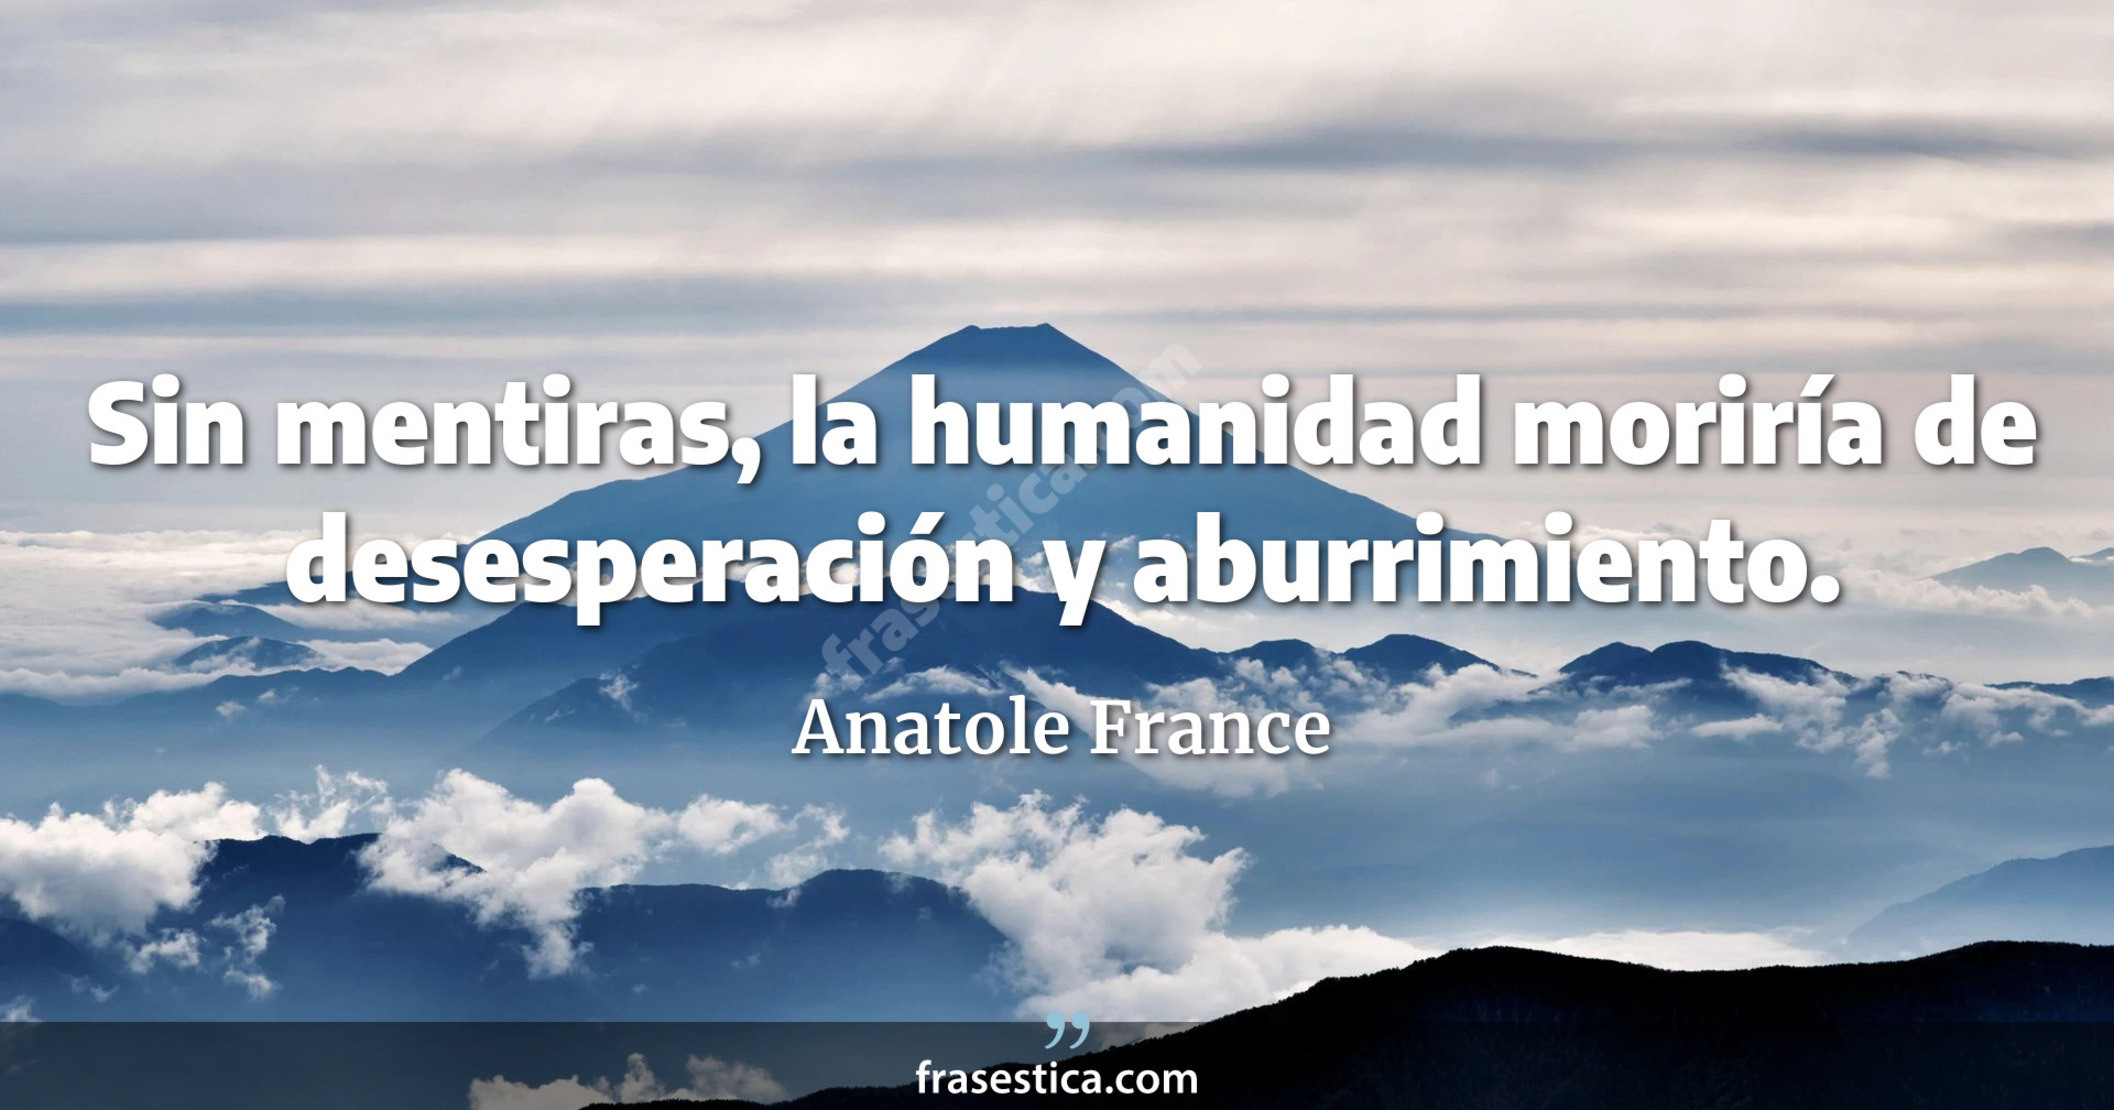 Sin mentiras, la humanidad moriría de desesperación y aburrimiento. - Anatole France